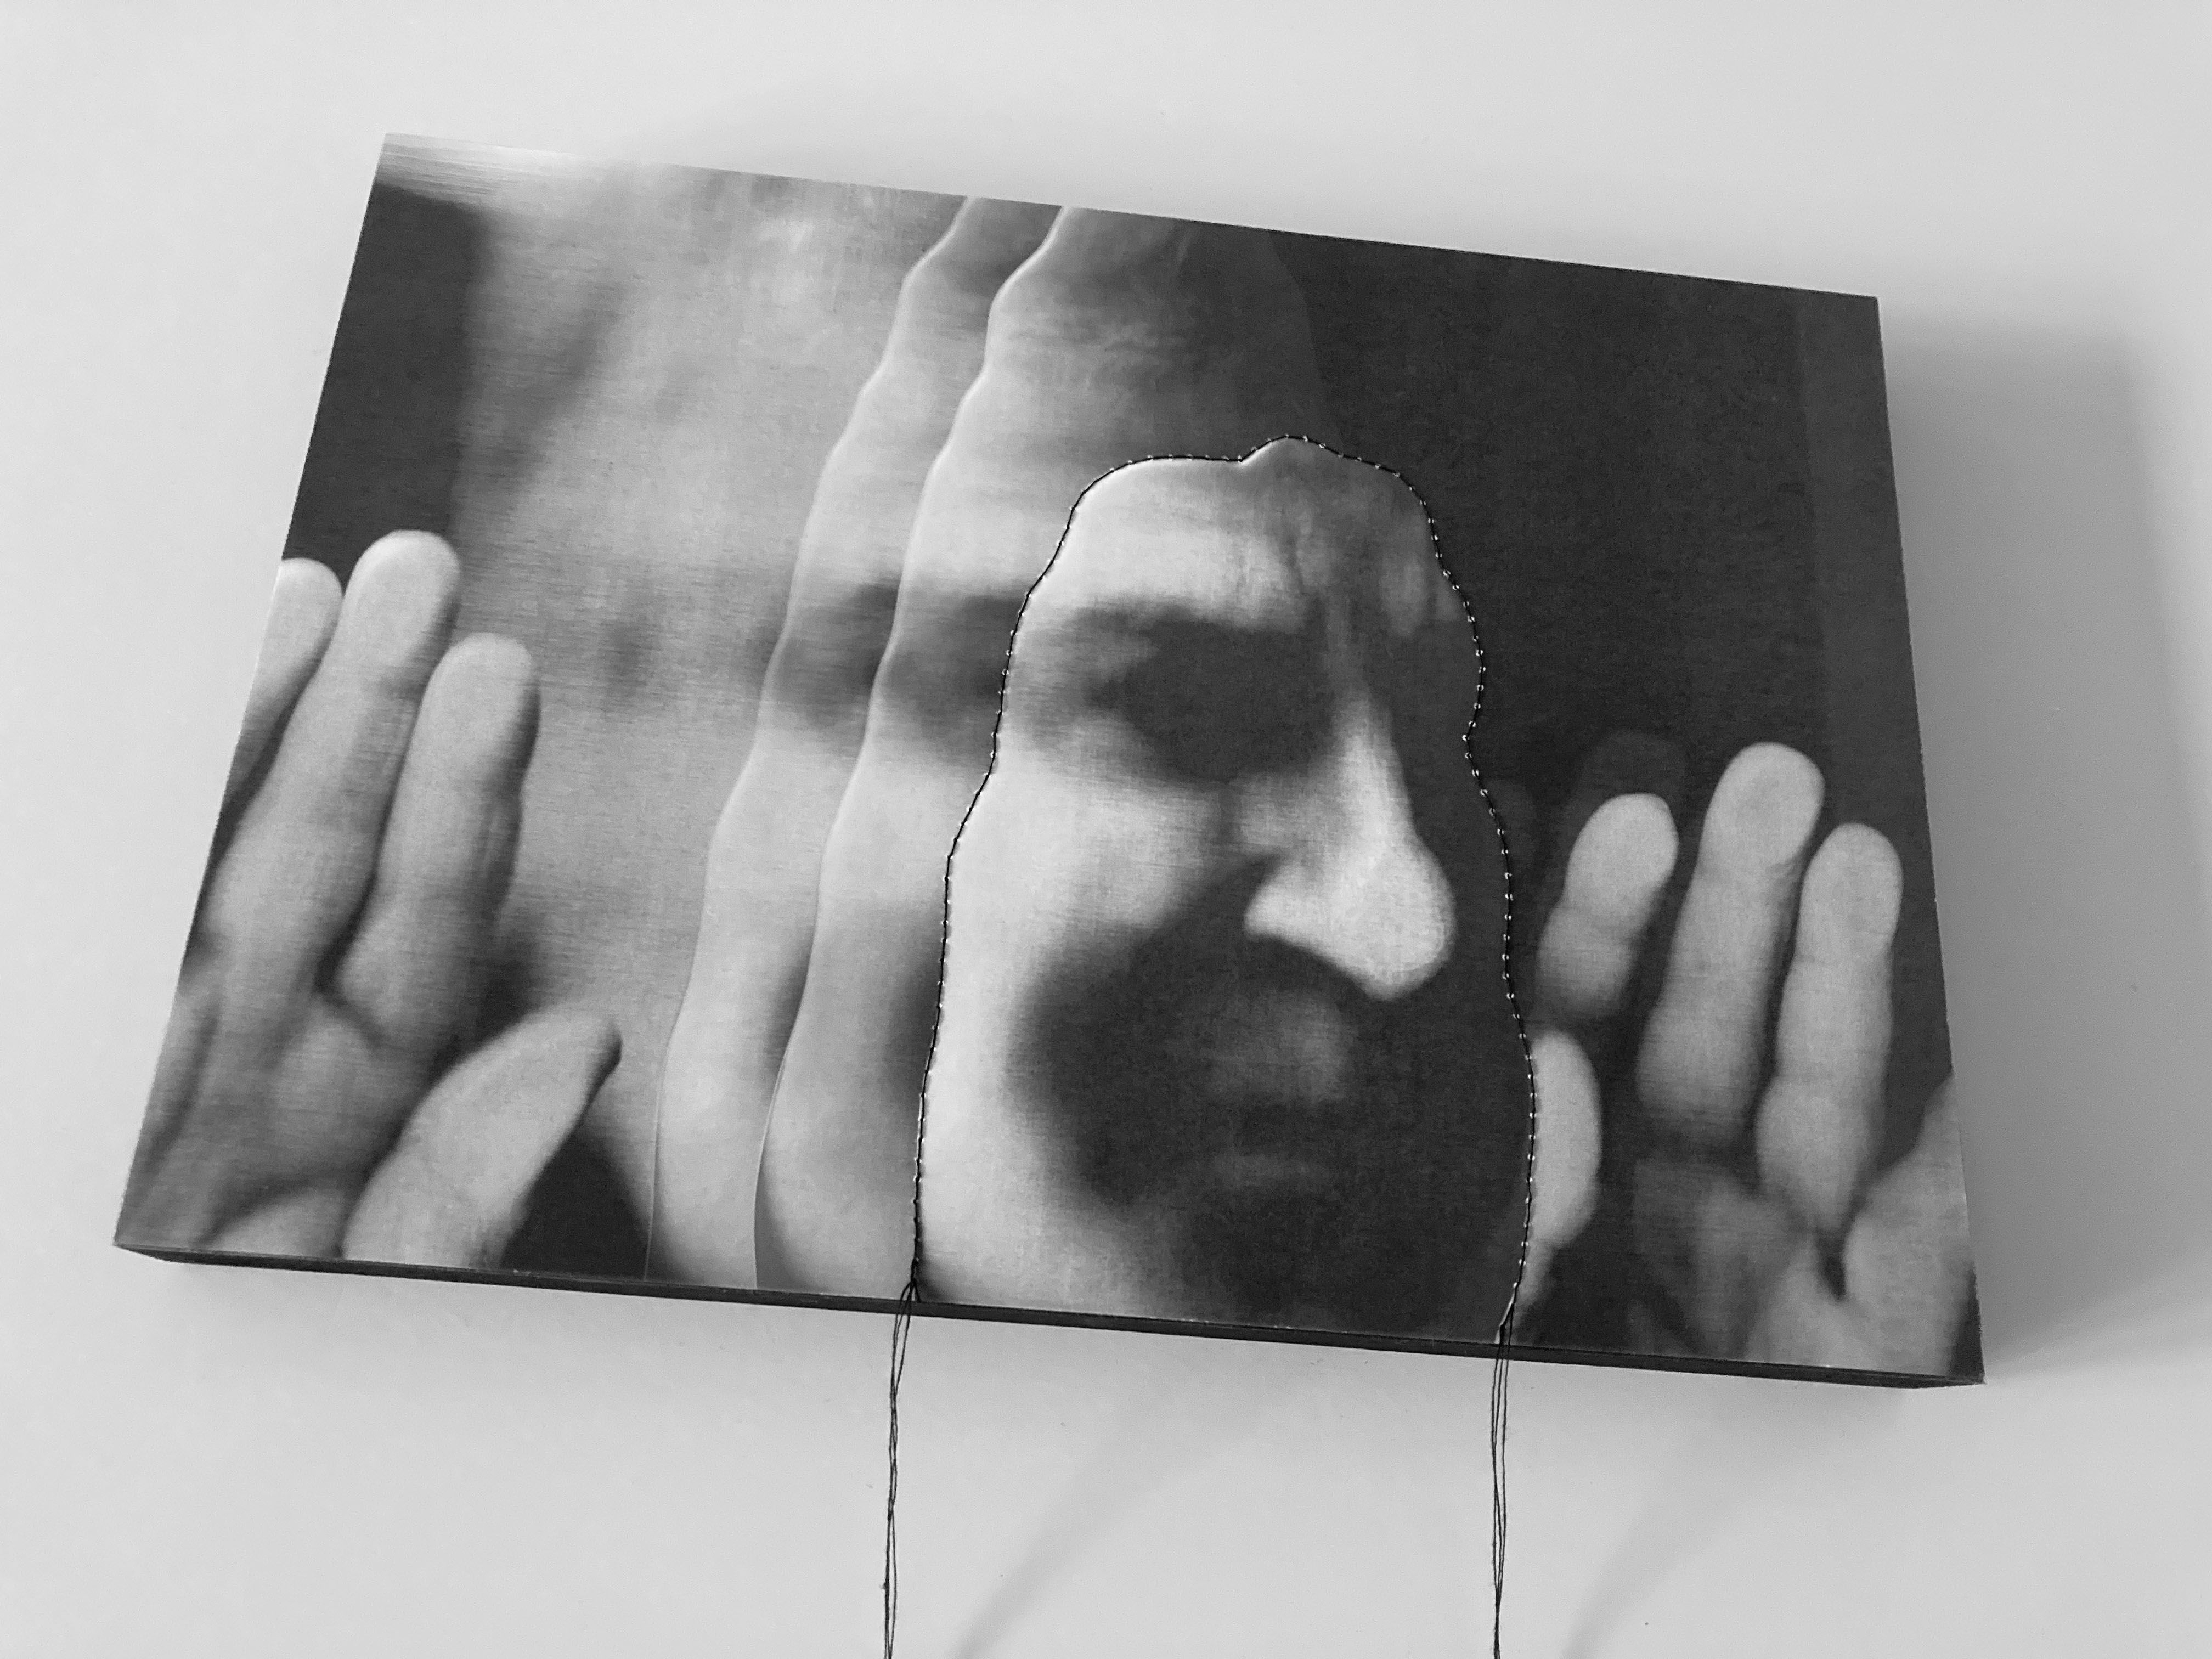 Risiko mit Gesicht. Ein Kunstprojekt von Manuela Brügger umgesetzt von Priska Leutenegger | Fotografie. Multimedia.